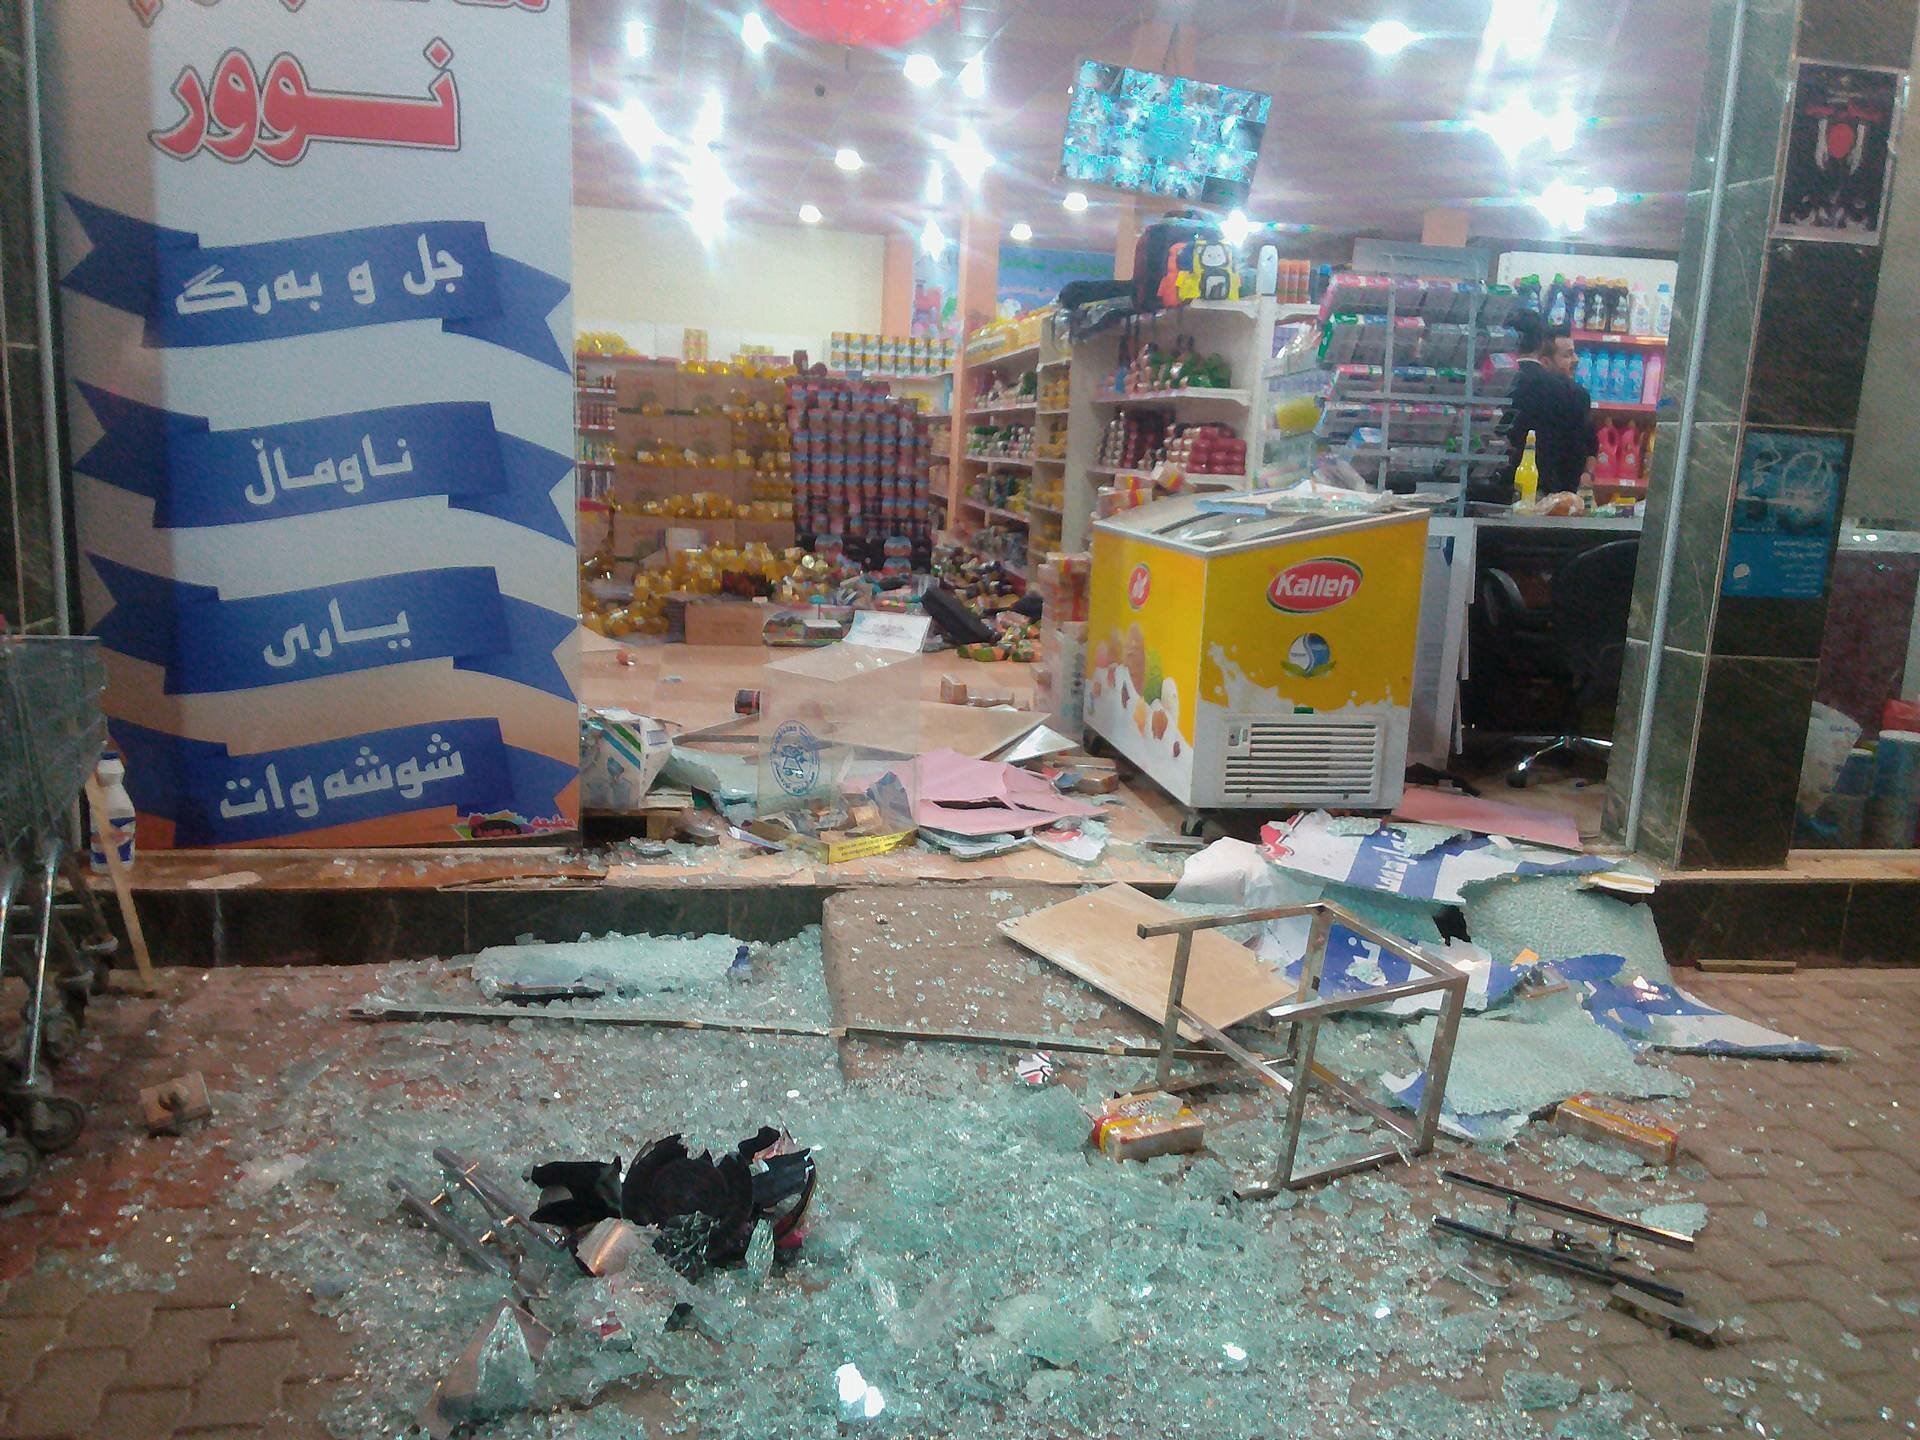 Разрушенный магазин. Землетрясение в магазине. Землетрясение на границе Ирана и Ирака 12 ноября 2017 года.